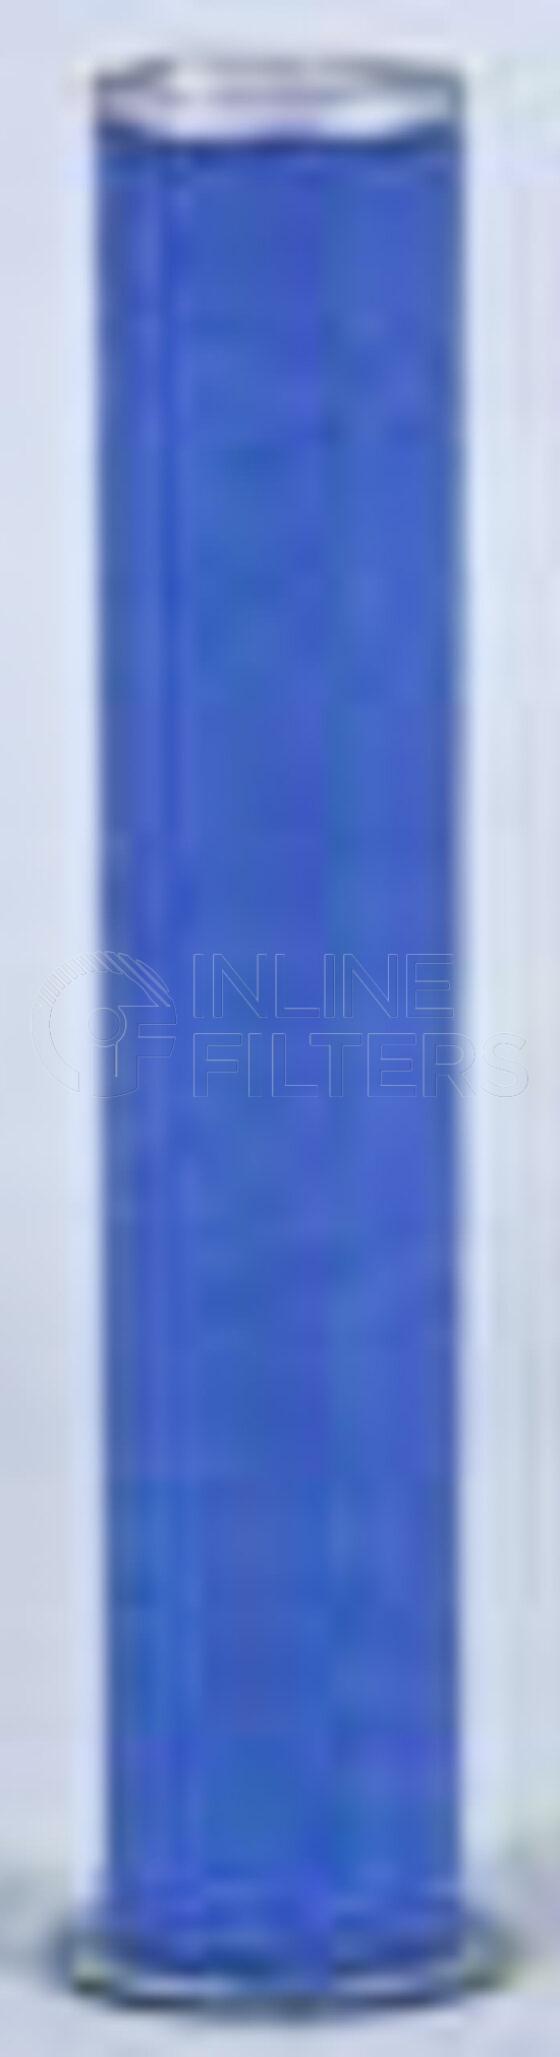 Fleetguard AF4883. Air Filter Product – Brand Specific Fleetguard – Cartridge Inner Product Fleetguard filter product Air Filter. Main Cross Reference is JCB 32205703. Flame Retardant Media: No. Flow Direction: Outside In. Fleetguard Part Type: AF_SND